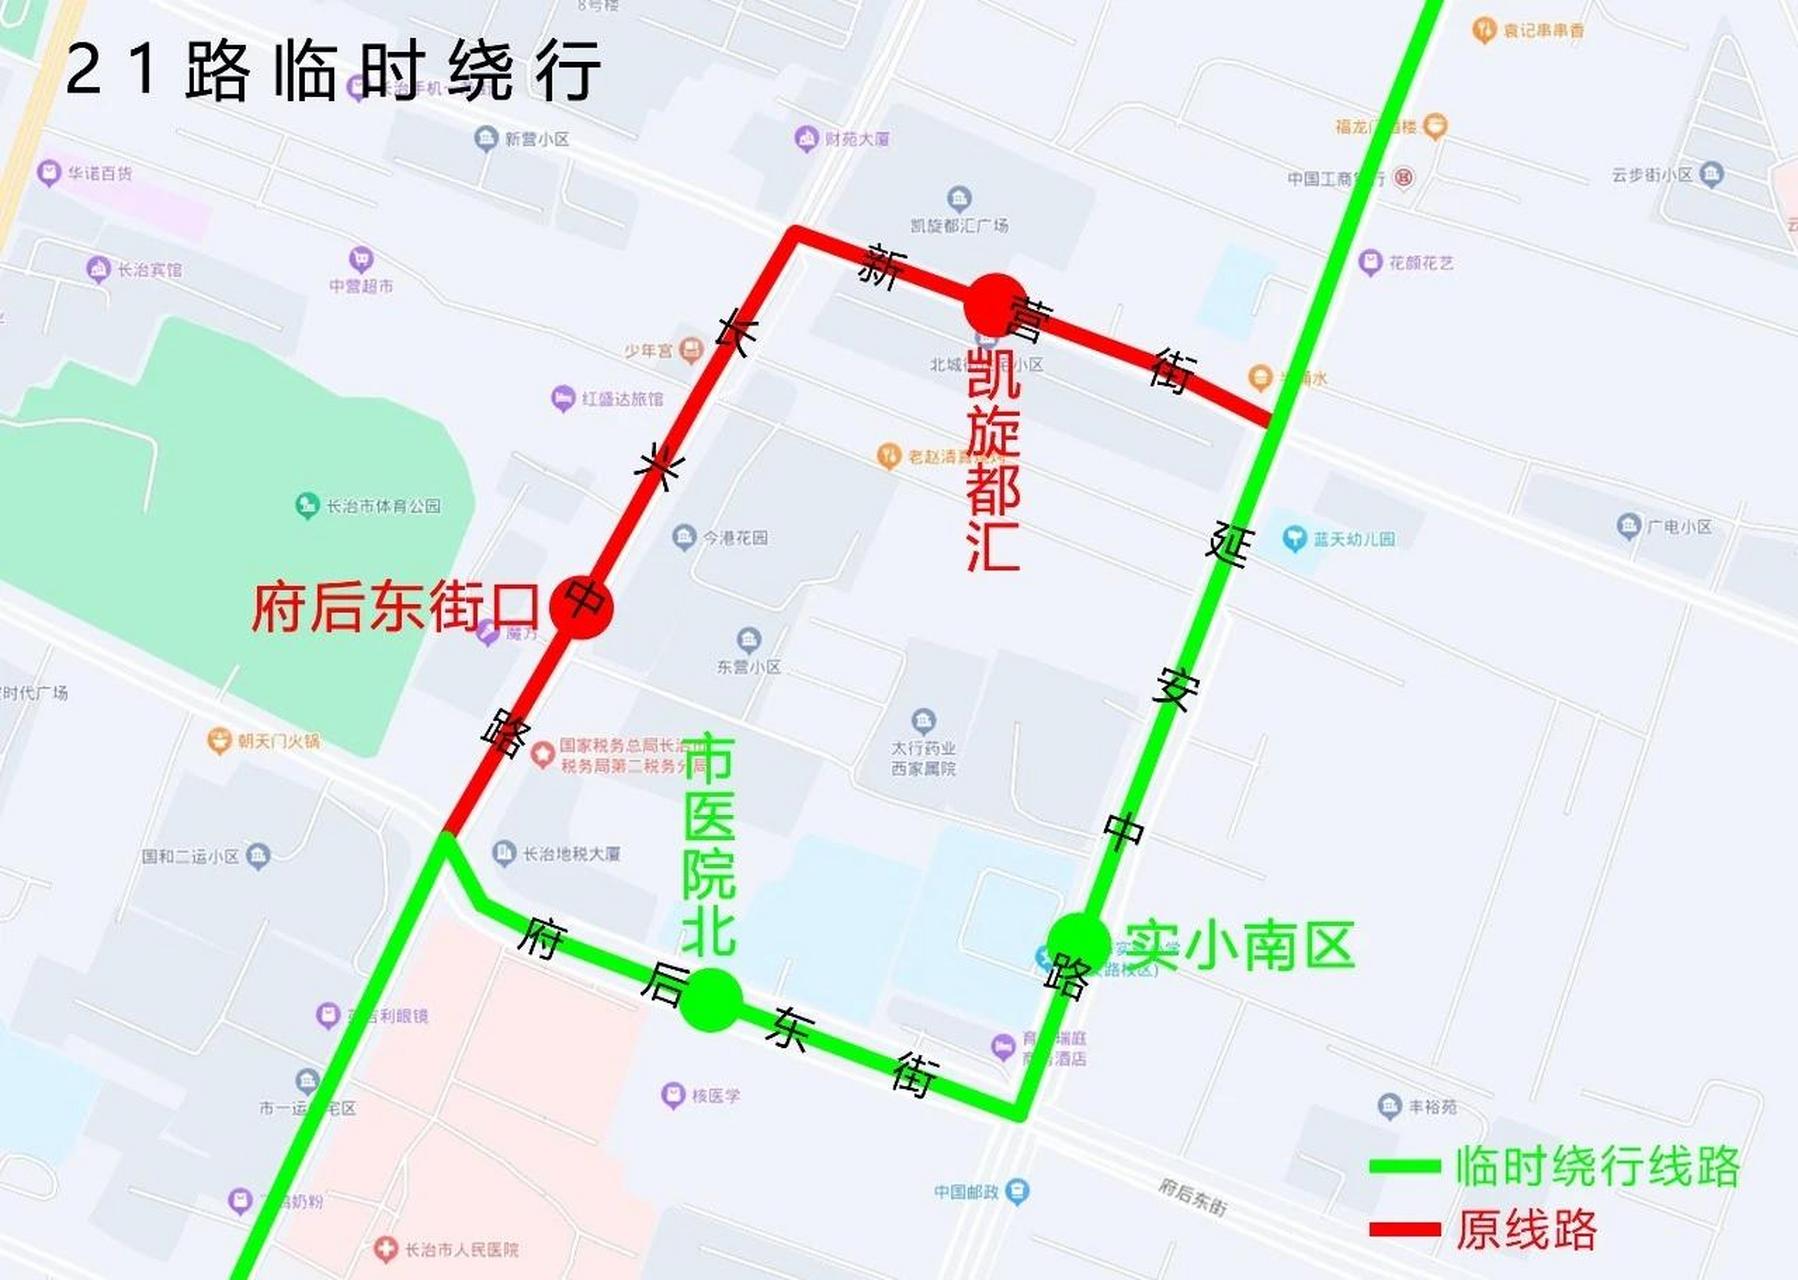 北京21路公交路线路图图片